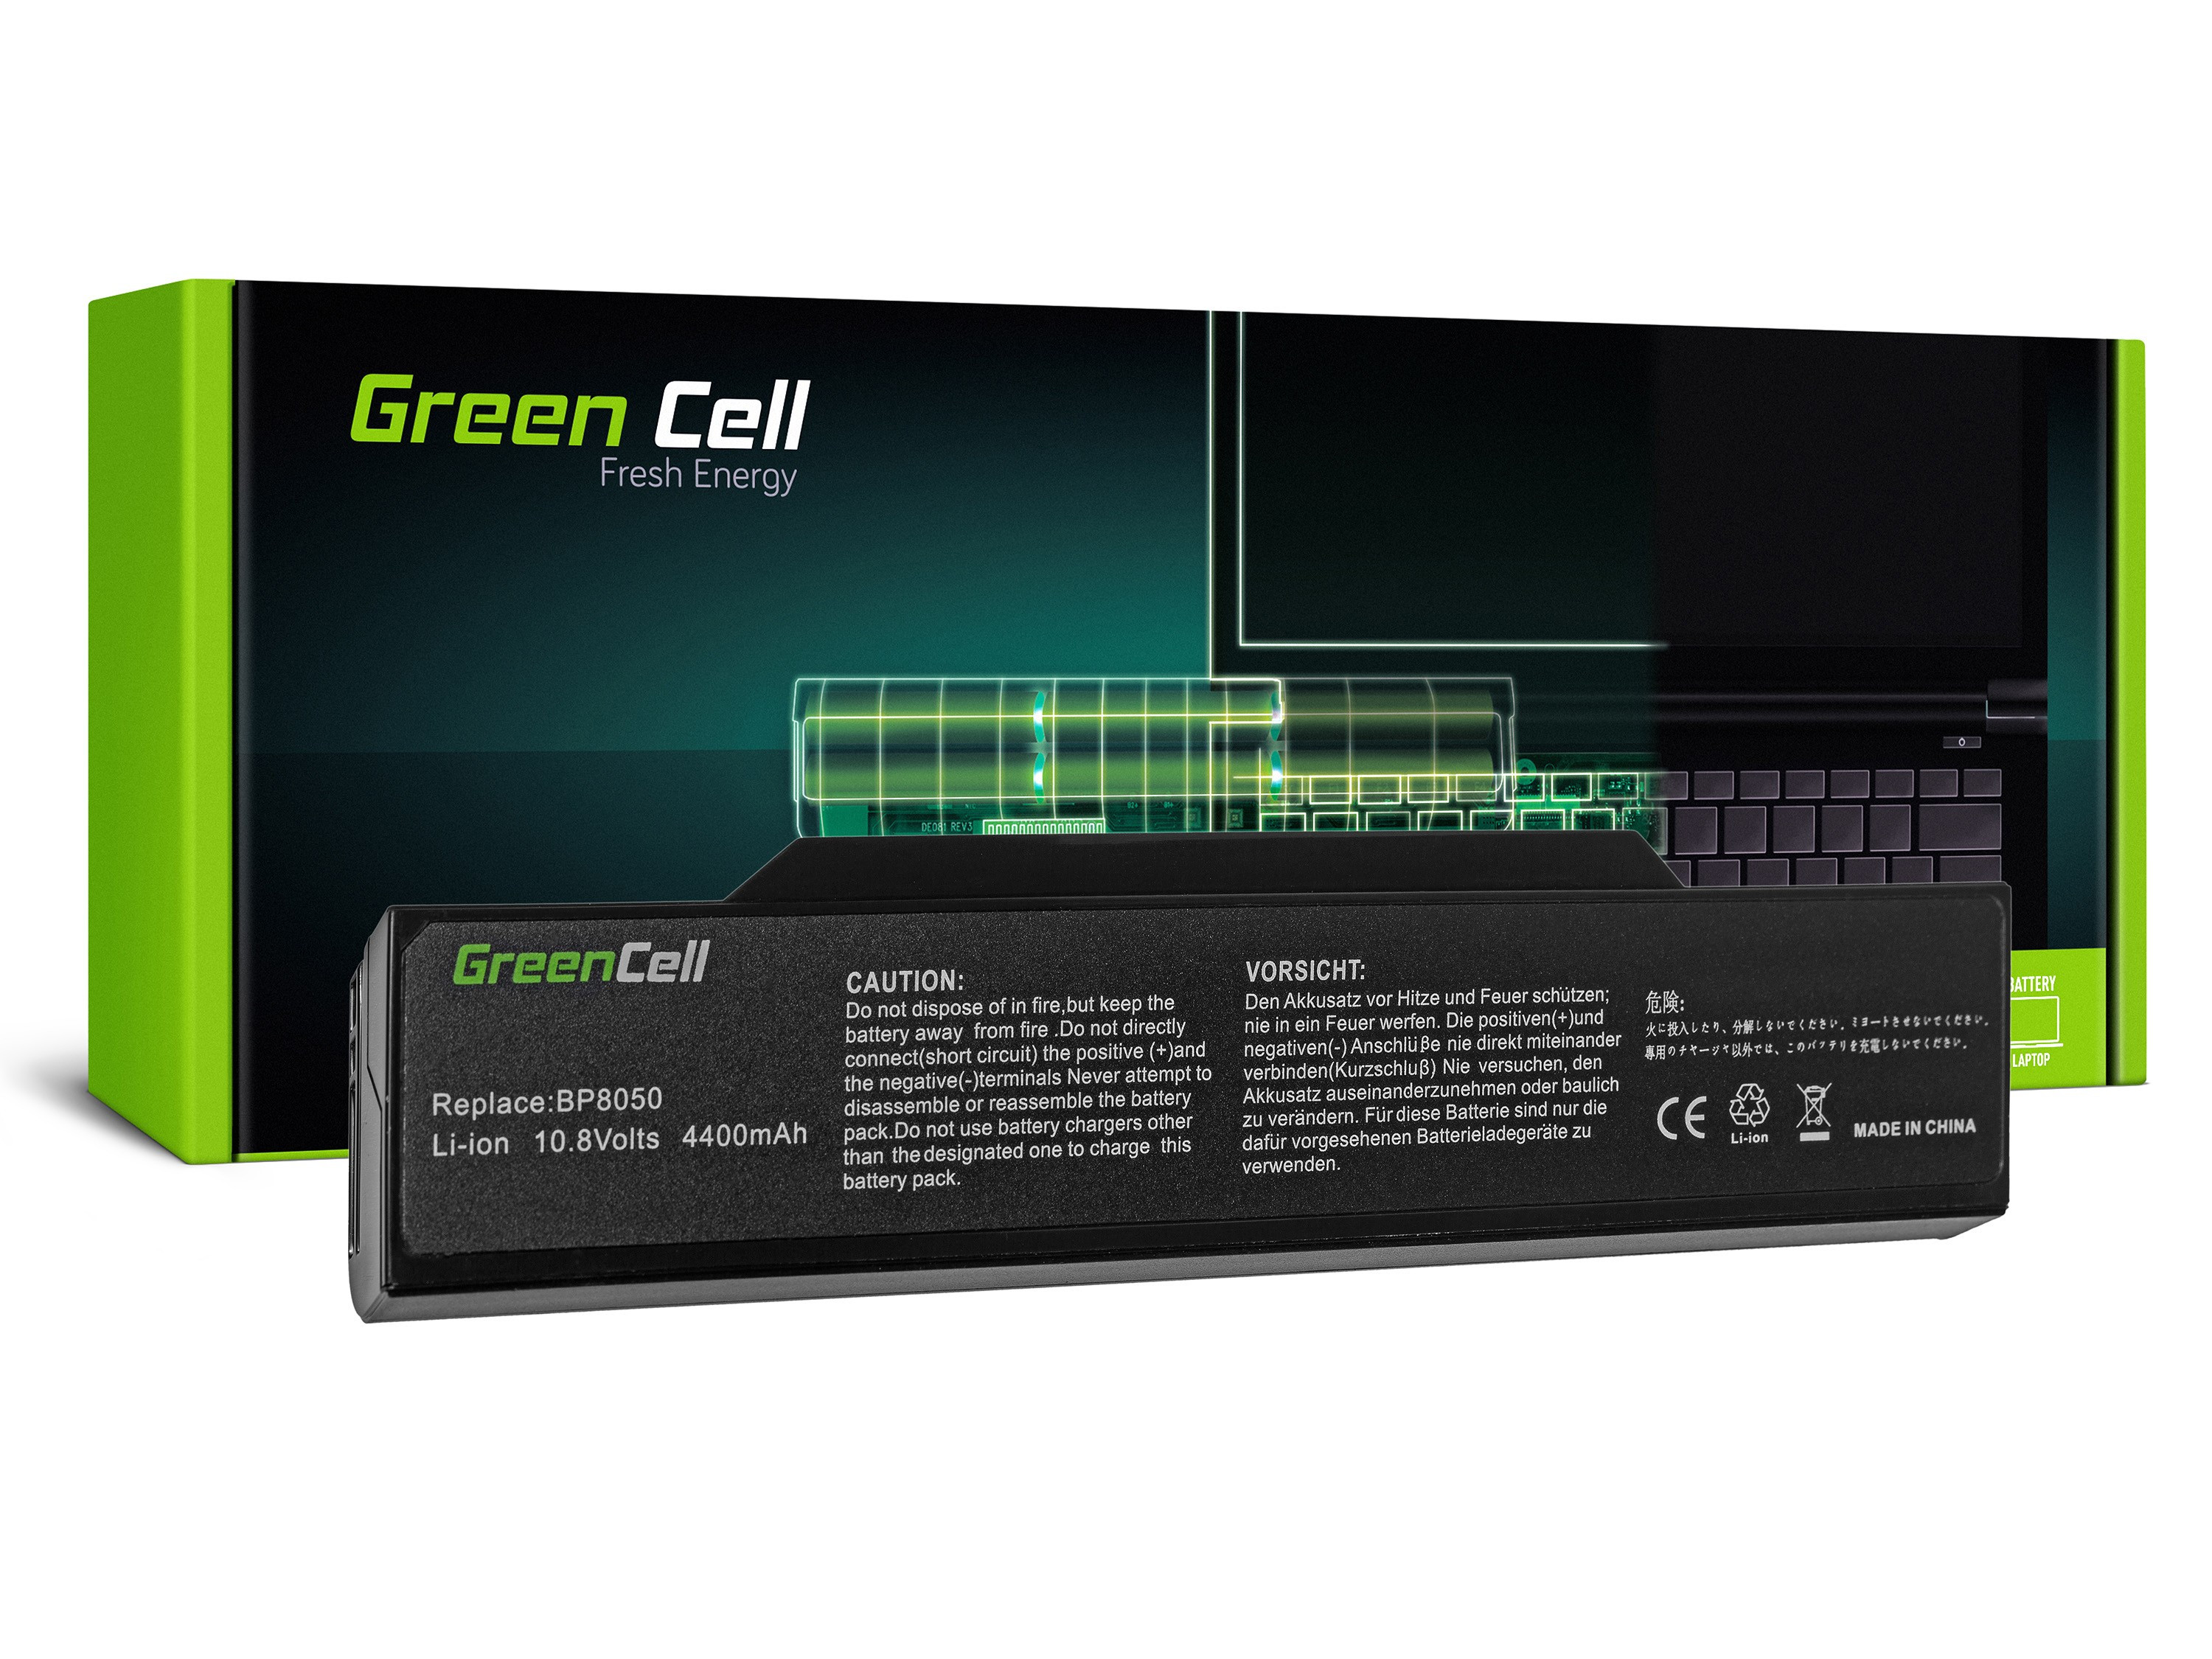 Green Cell FS08 Baterie Fujitsu-Siemens M1420/L1300/L7310W/Systemax Neotach 3300 4400mAh Li-ion